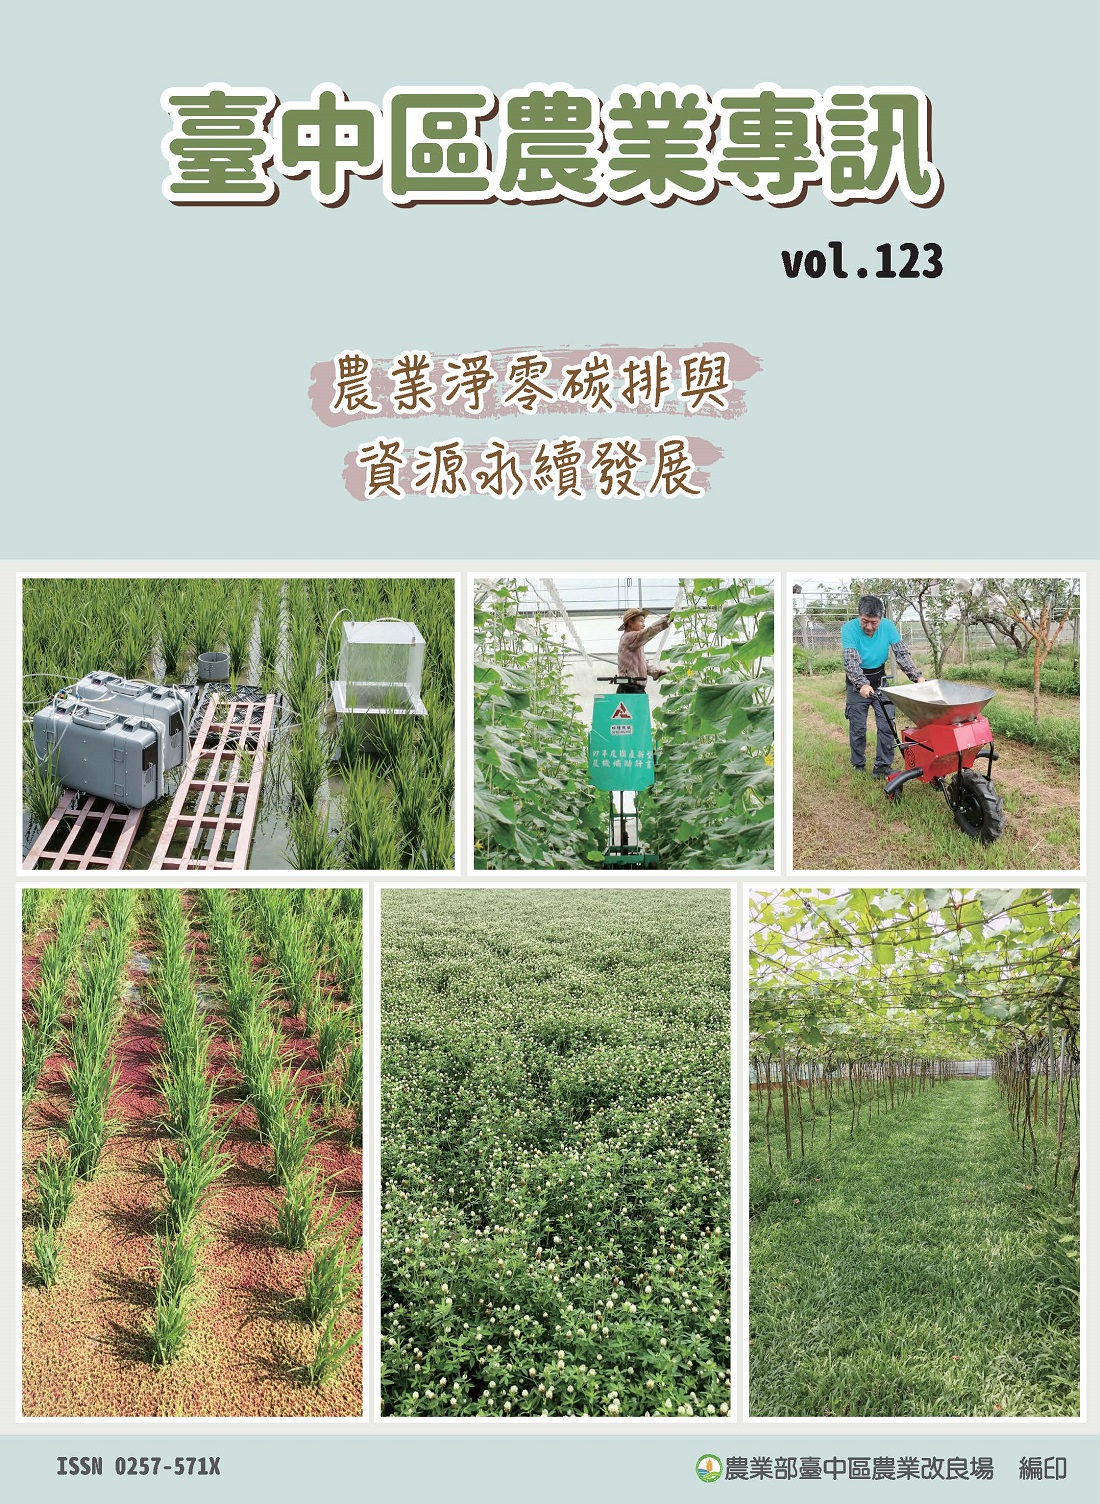 臺中區農業專訊第123期(112年12月)－農業淨零碳排與資源永續發展